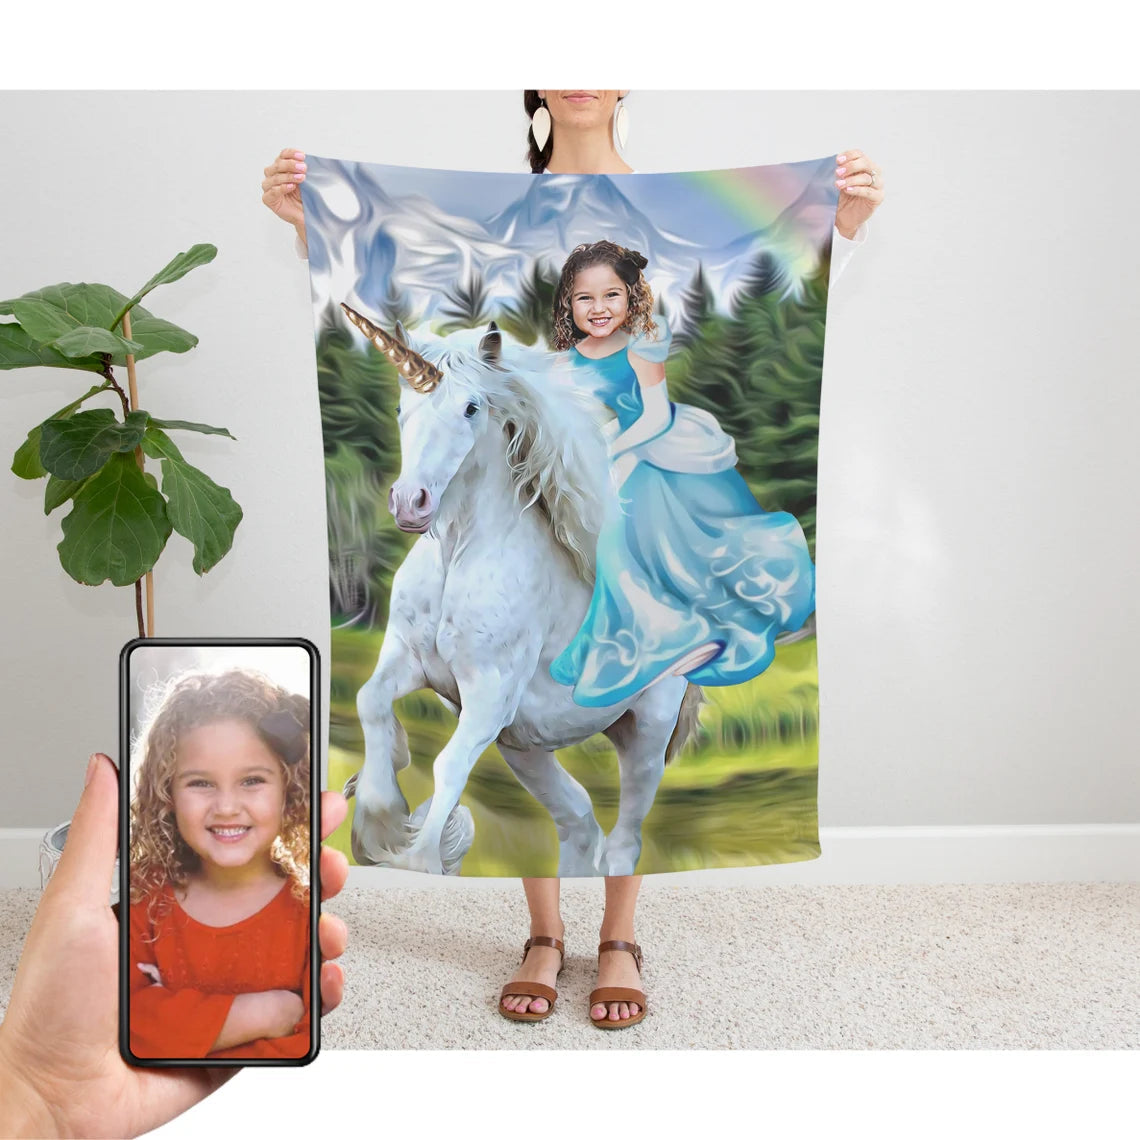 The Unicorn Rider Blanket Custom Gift For Kids at My Kid's Dream mykidsdream.com